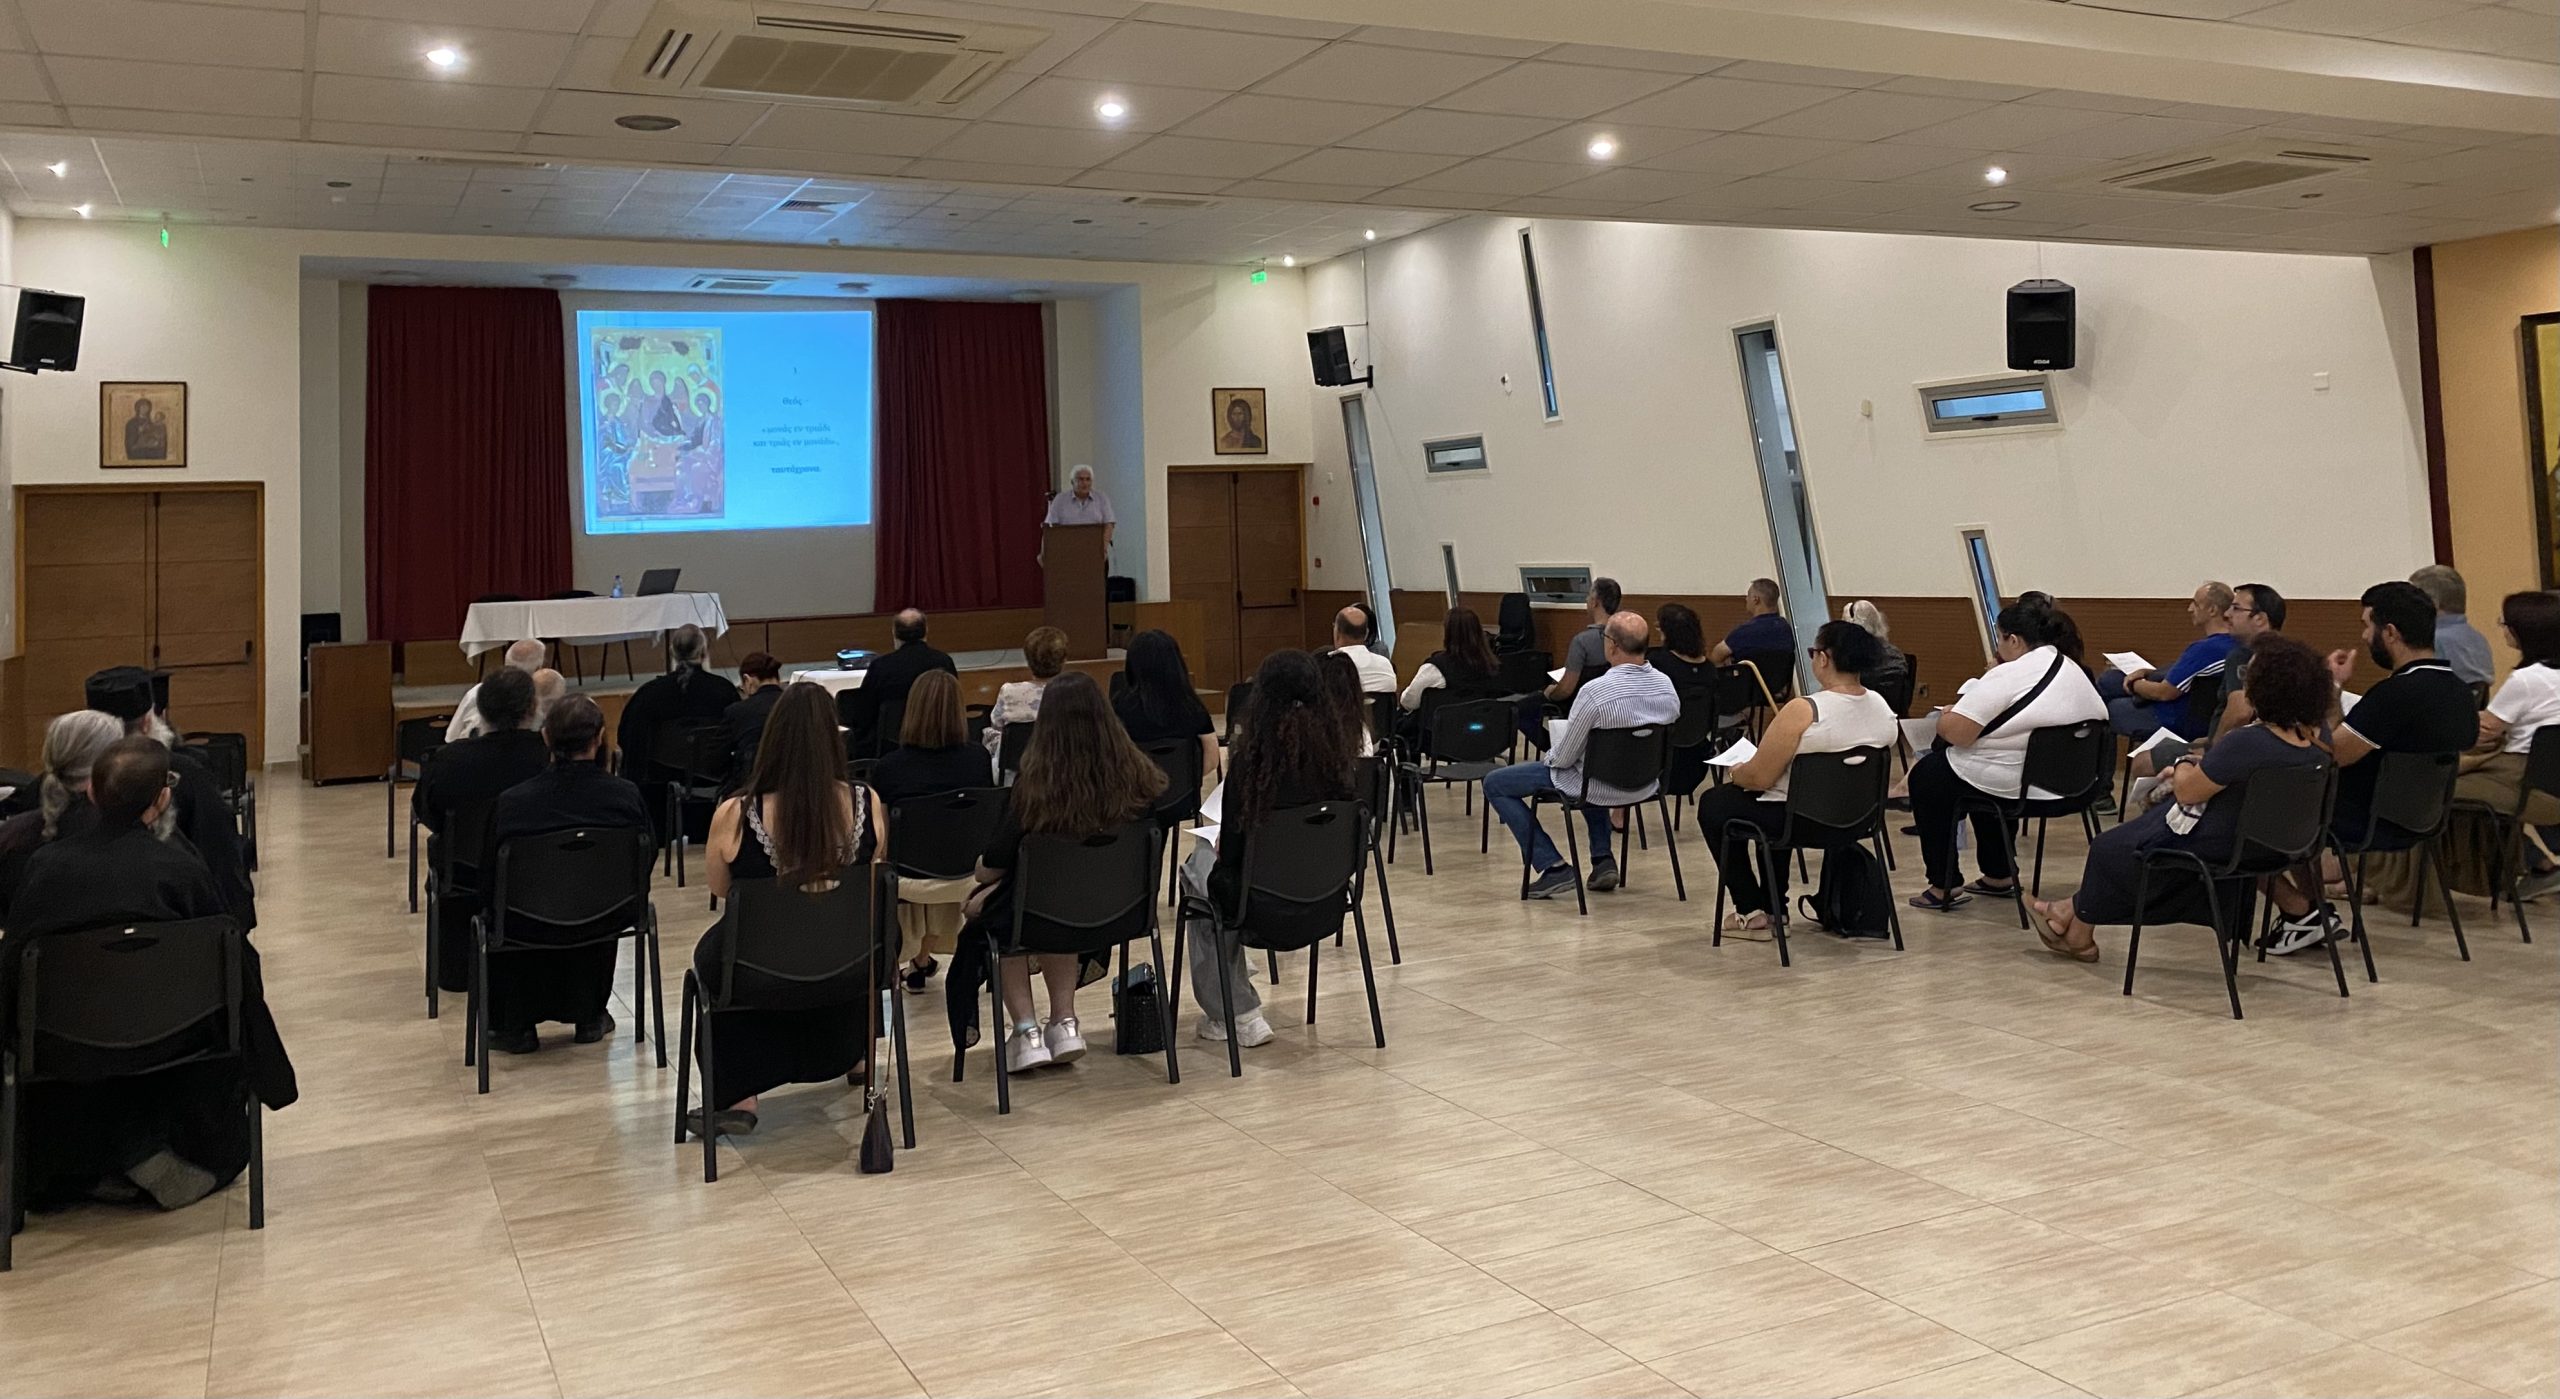 Πρώτη Θεολογική διάλεξη στο πολιτιστικό κέντρο Αγίου Γεωργίου Κοντού στη Λάρνακα